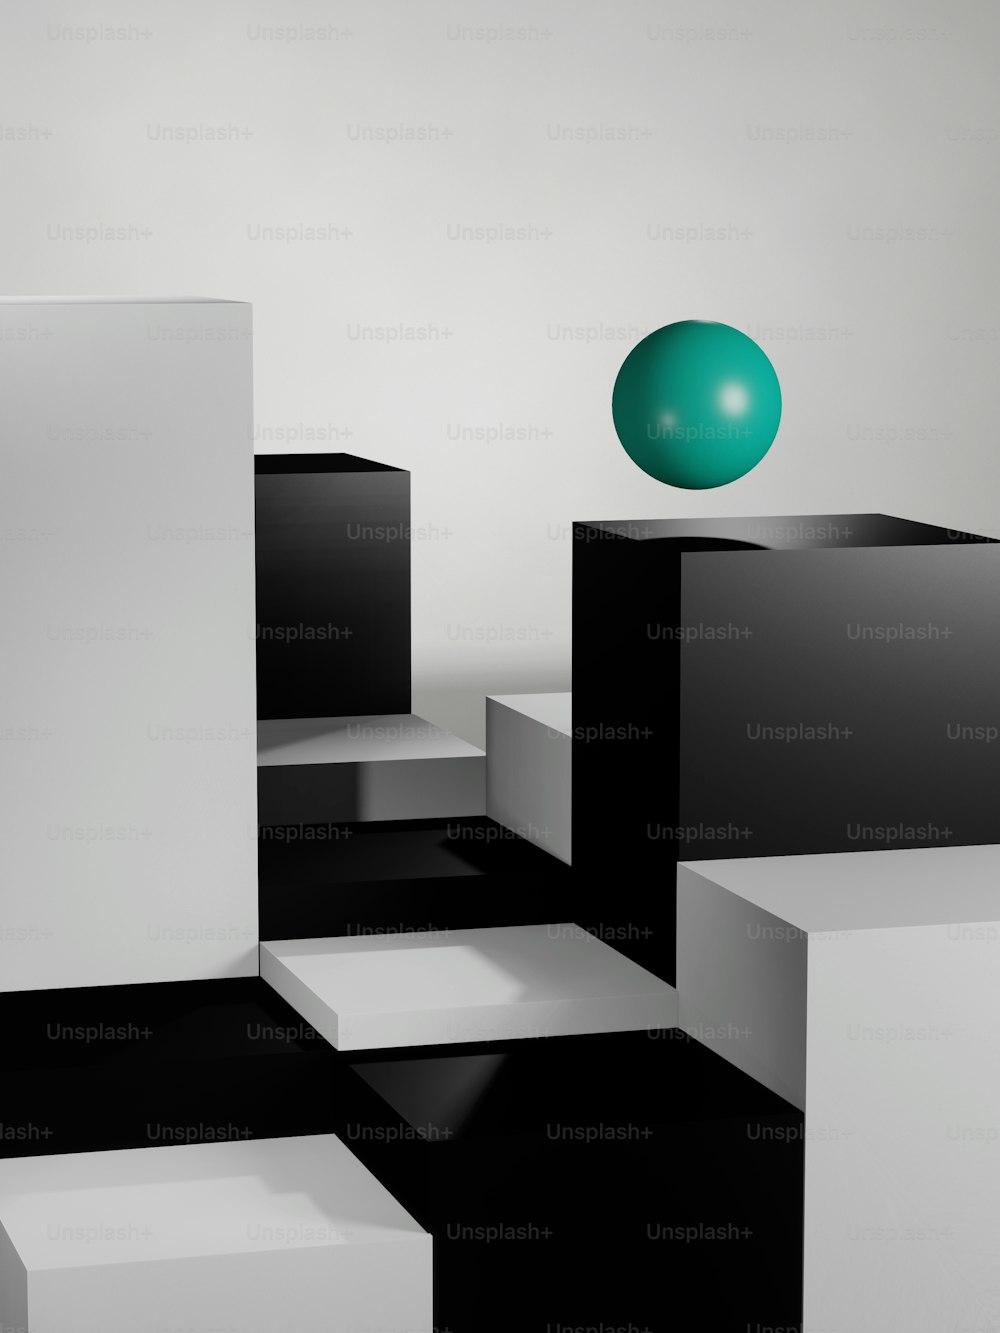 Ein grüner Ball sitzt auf einer schwarz-weißen Box